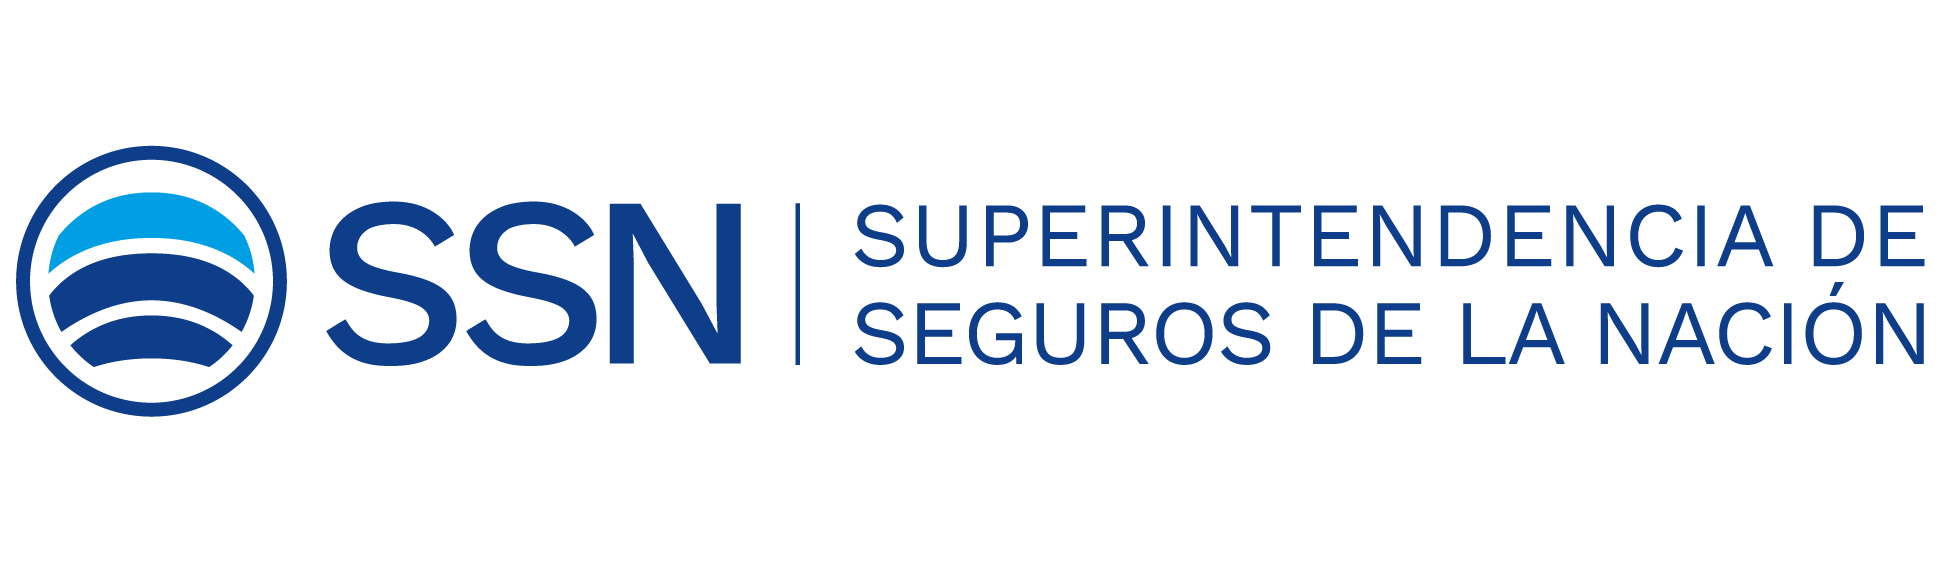 Logo ssn